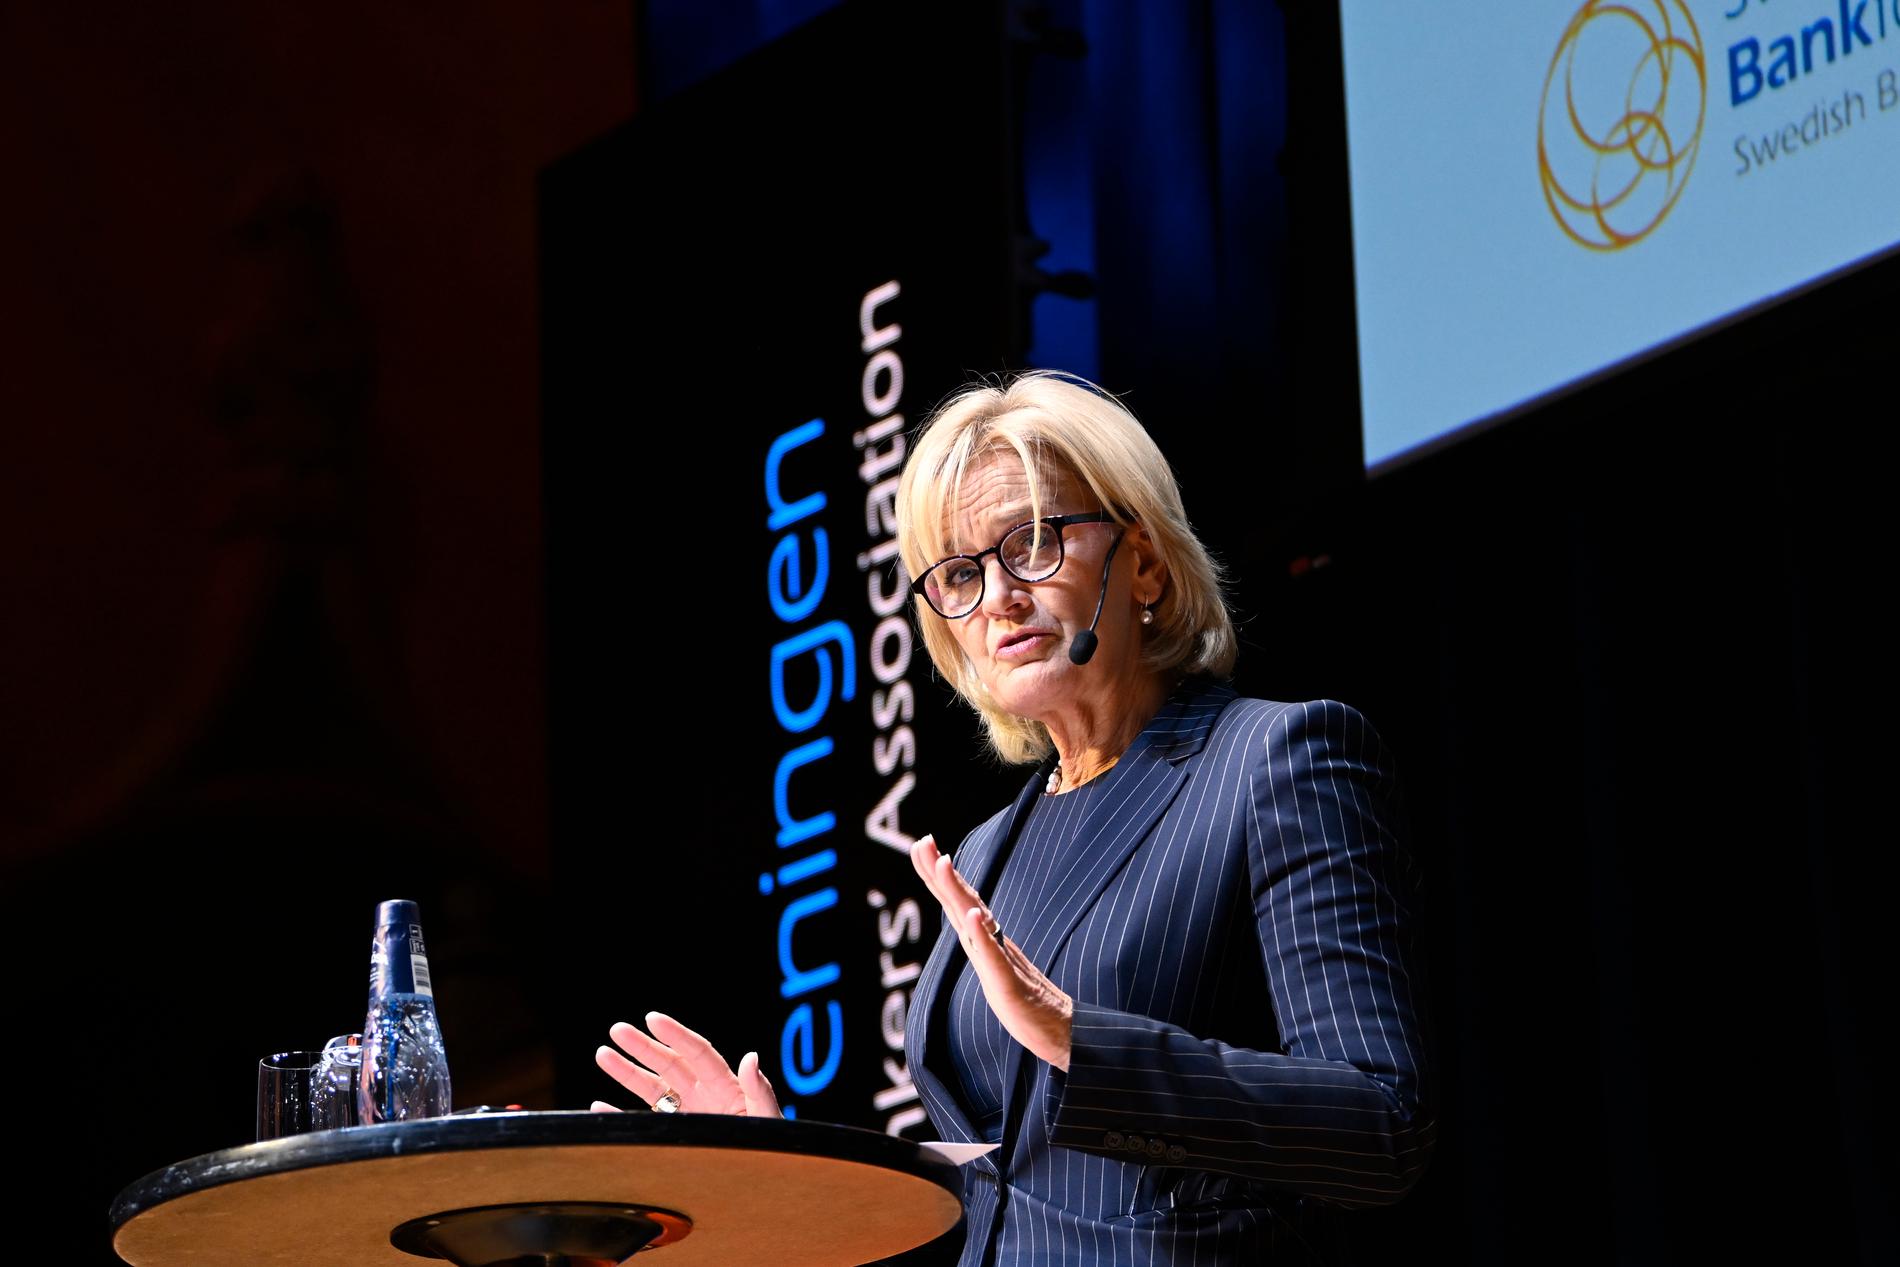 Handelsbankens chef Carina Åkerström hävdar att hennes kunder fortfarande har goda marginalen.